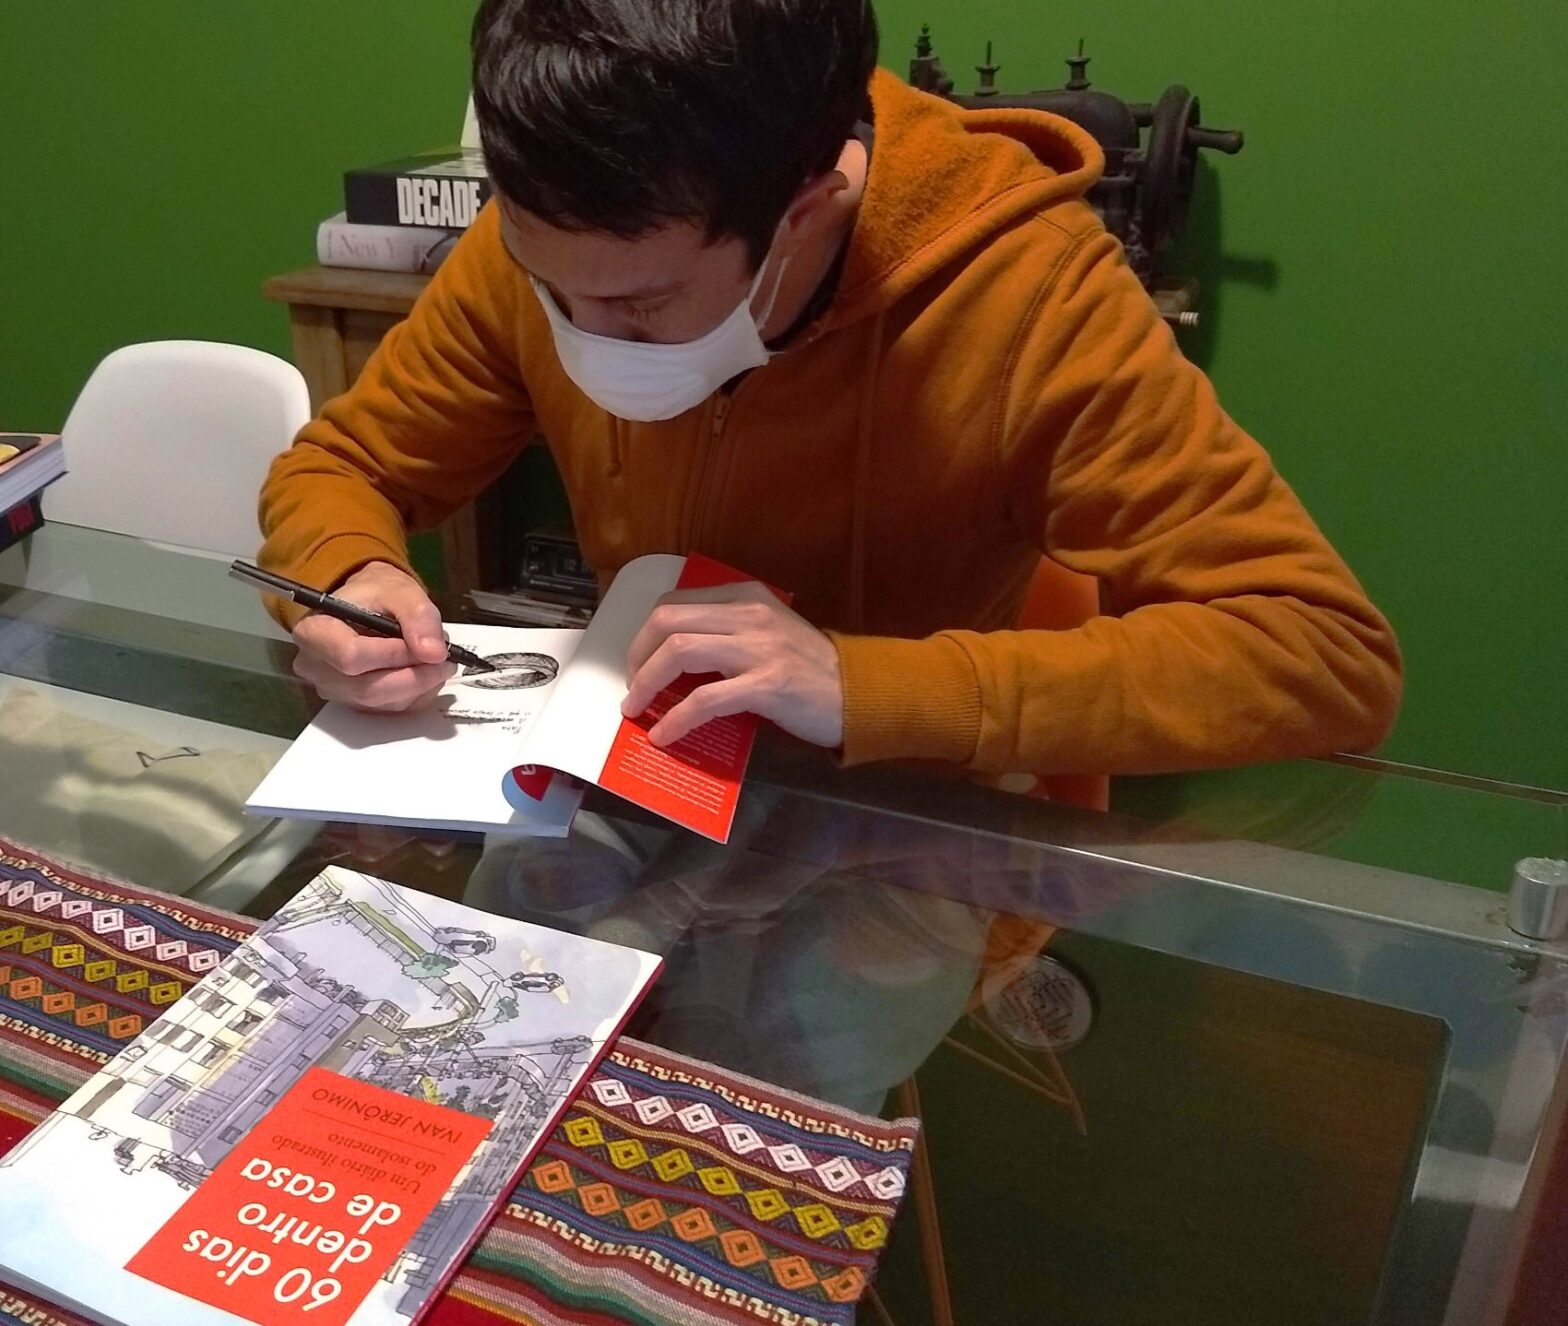 Autor de casaco ocre em uma mesa de vidro escrevendo a dedicatória em um livro aberto. À sua frente, outro livro fechado. Ao fundo, parede verde